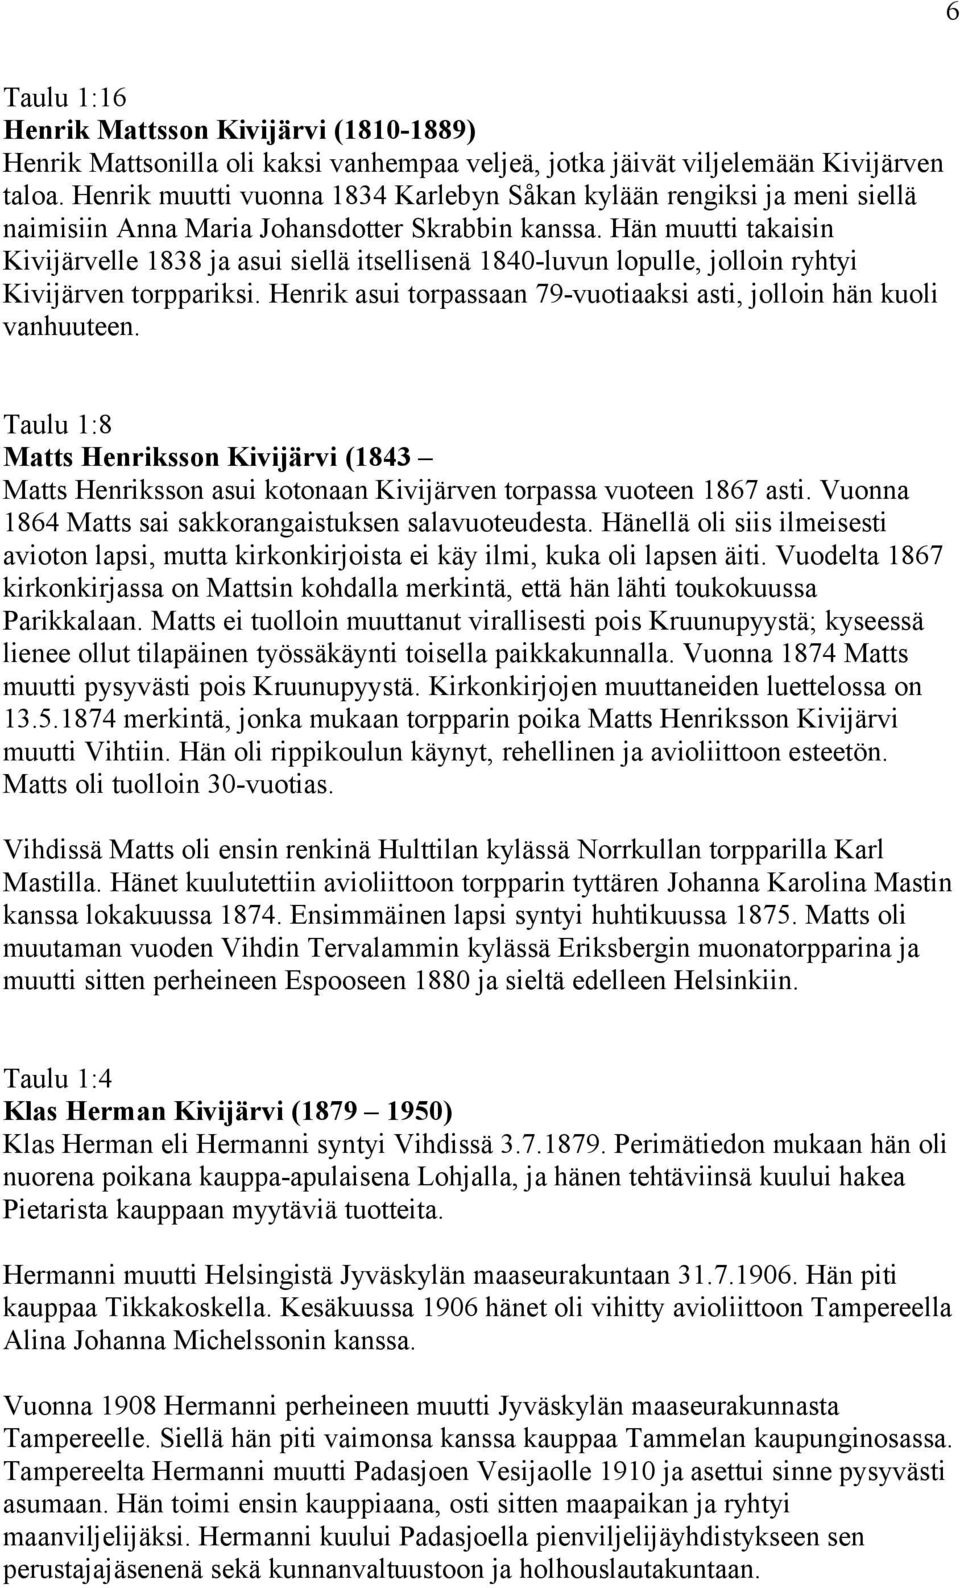 Hän muutti takaisin Kivijärvelle 1838 ja asui siellä itsellisenä 1840-luvun lopulle, jolloin ryhtyi Kivijärven torppariksi. Henrik asui torpassaan 79-vuotiaaksi asti, jolloin hän kuoli vanhuuteen.